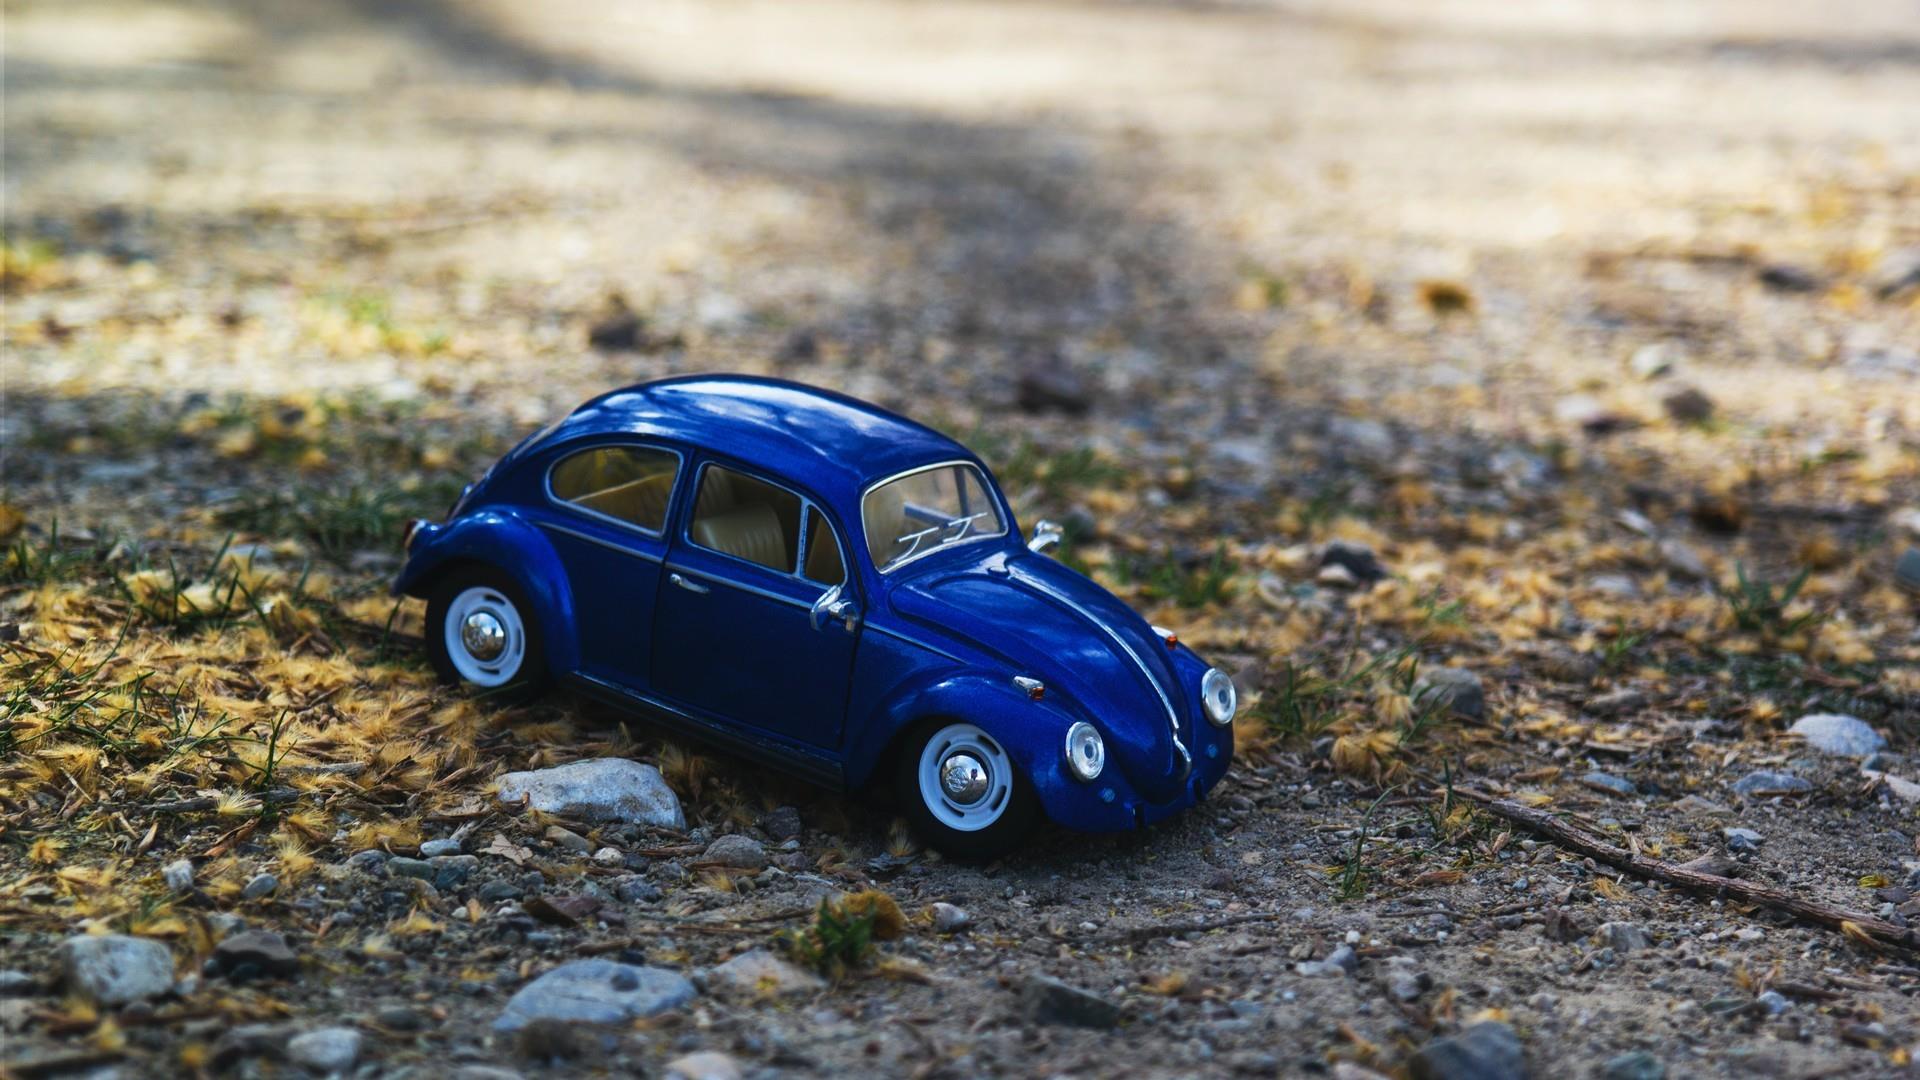 好看精致可爱的小汽车模型图片桌面壁纸